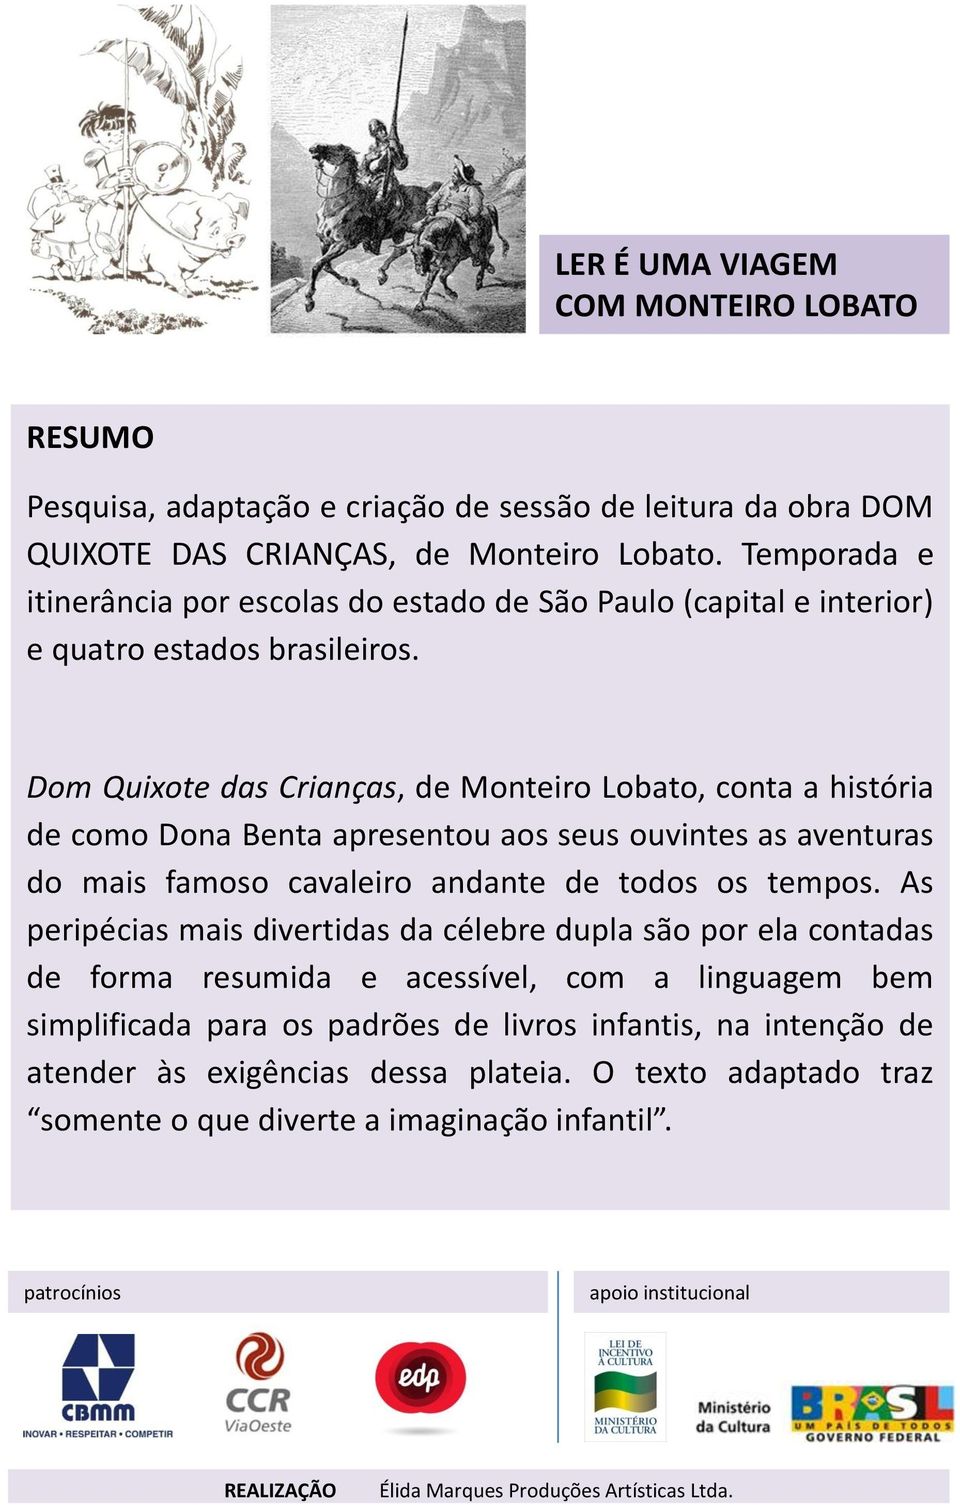 Dom Quixote das Crianças, de Monteiro Lobato, conta a história de como Dona Benta apresentou aos seus ouvintes as aventuras do mais famoso cavaleiro andante de todos os